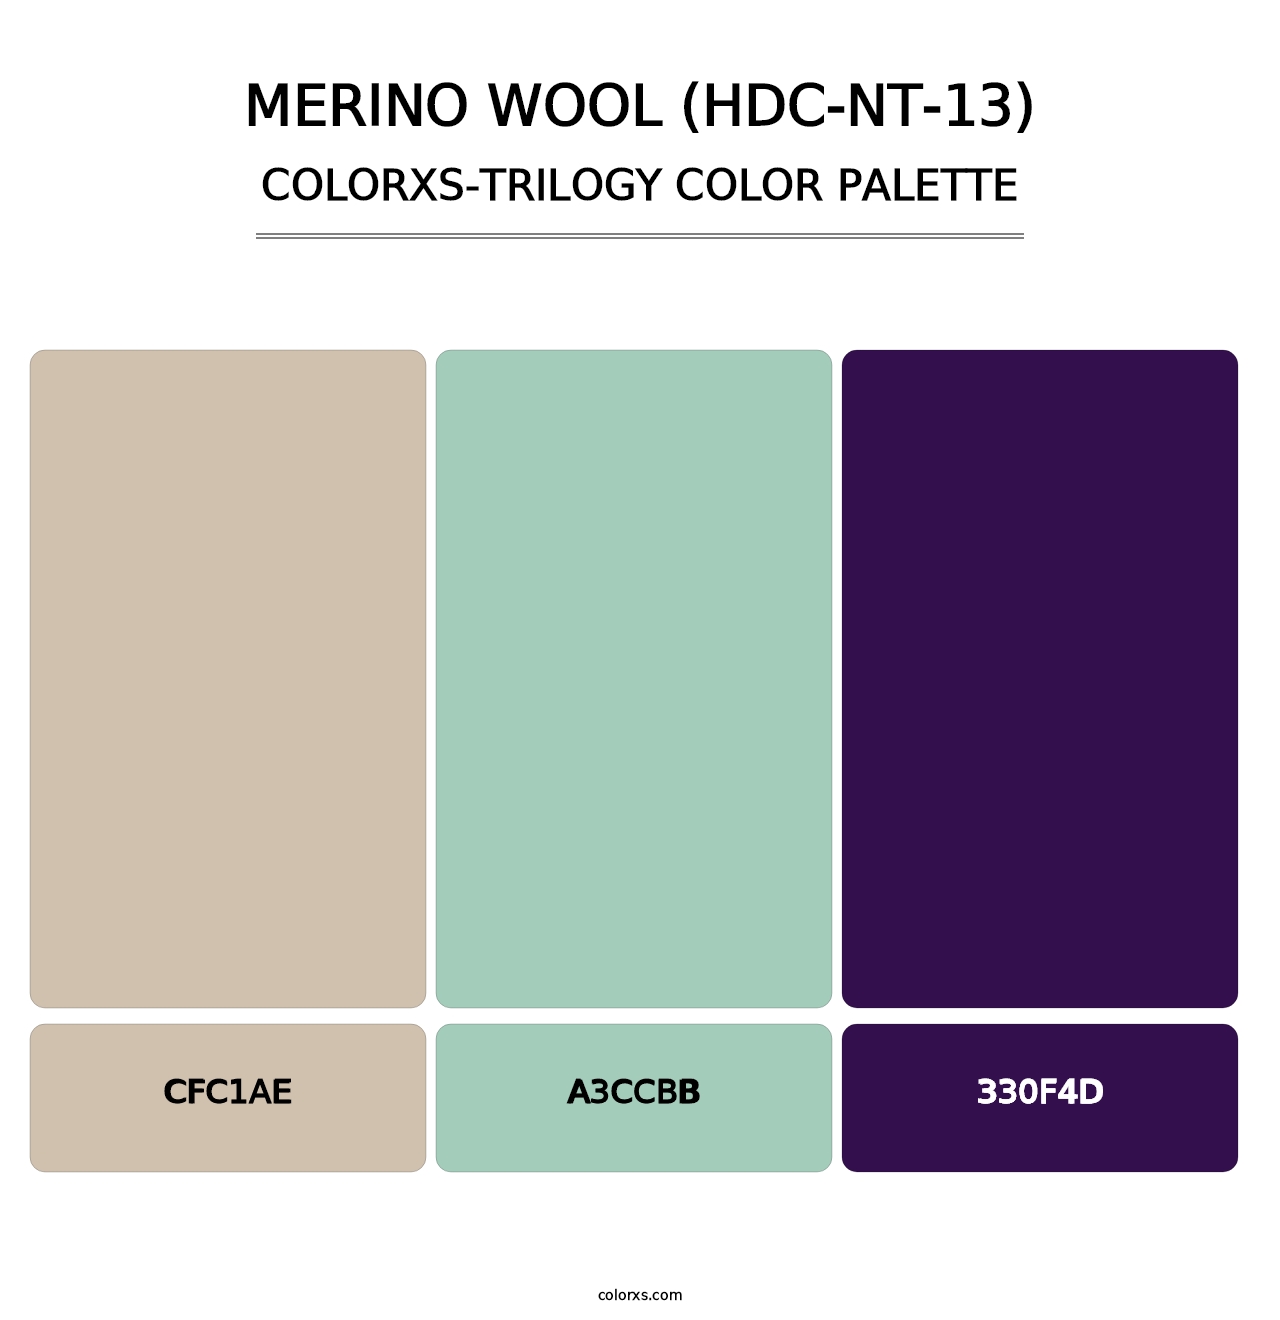 Merino Wool (HDC-NT-13) - Colorxs Trilogy Palette